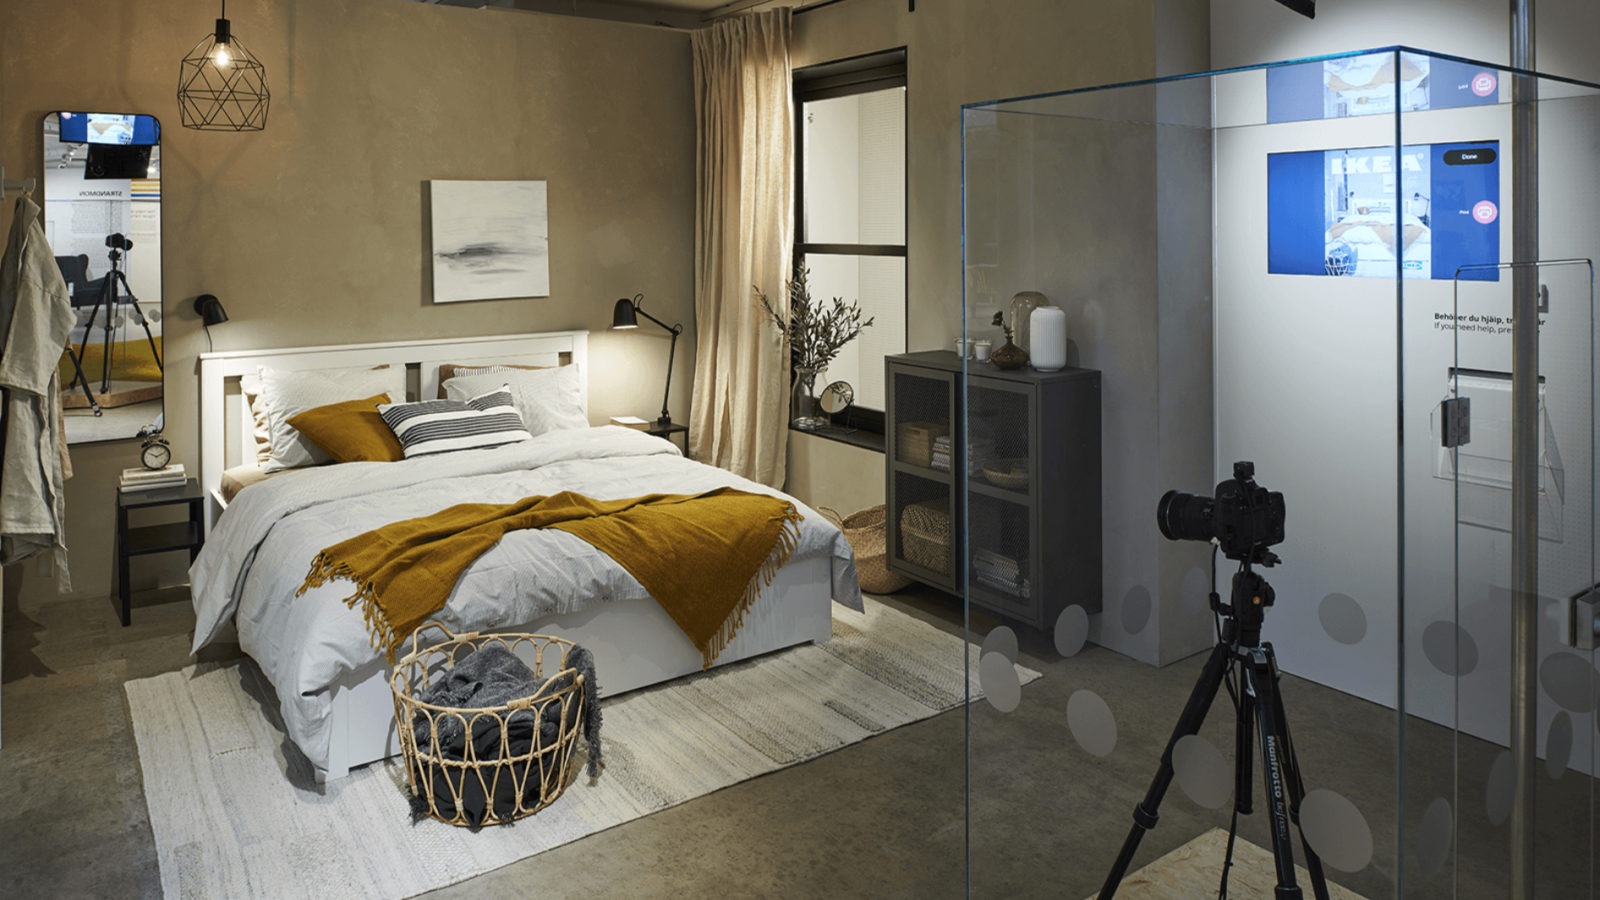 Ein gemütliches Schlafzimmer mit einem gemachten Doppelbett, einem Teppich, Kissen und Lampen, und einem großen Glaskasten, indem sich eine Kamera auf einem Stativ befindet.